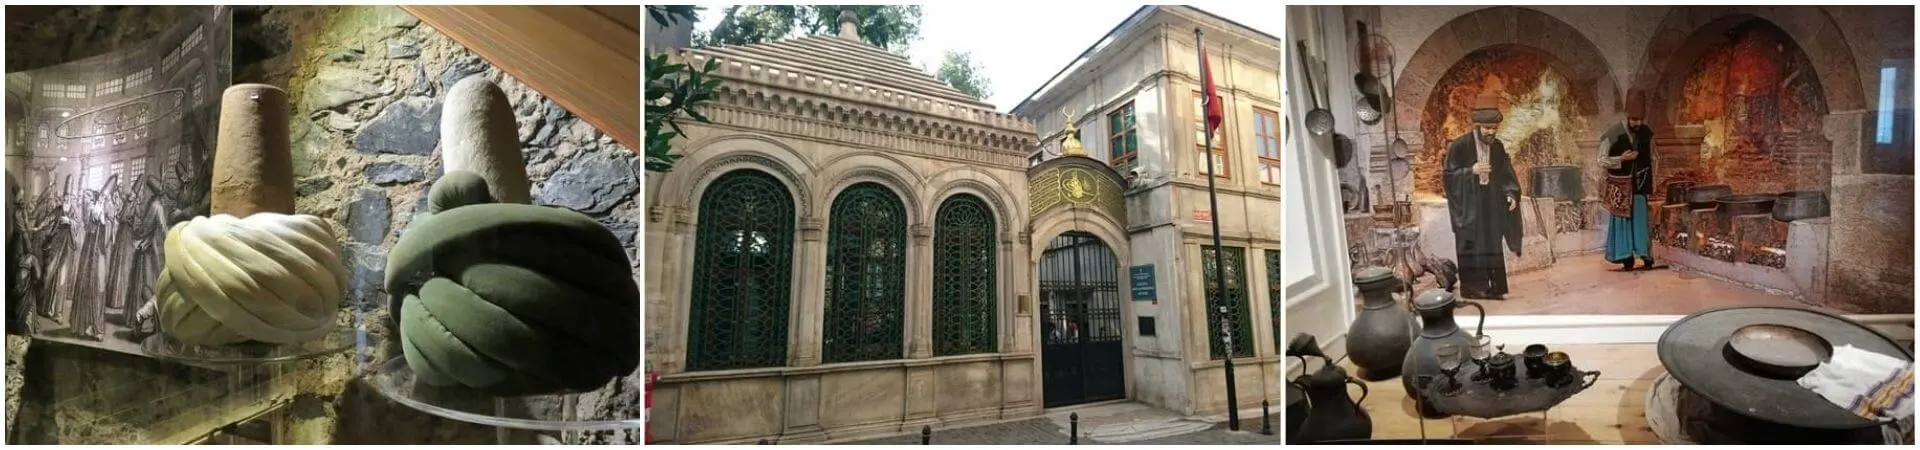 Вход в музей лоджа Галата Мевлеви